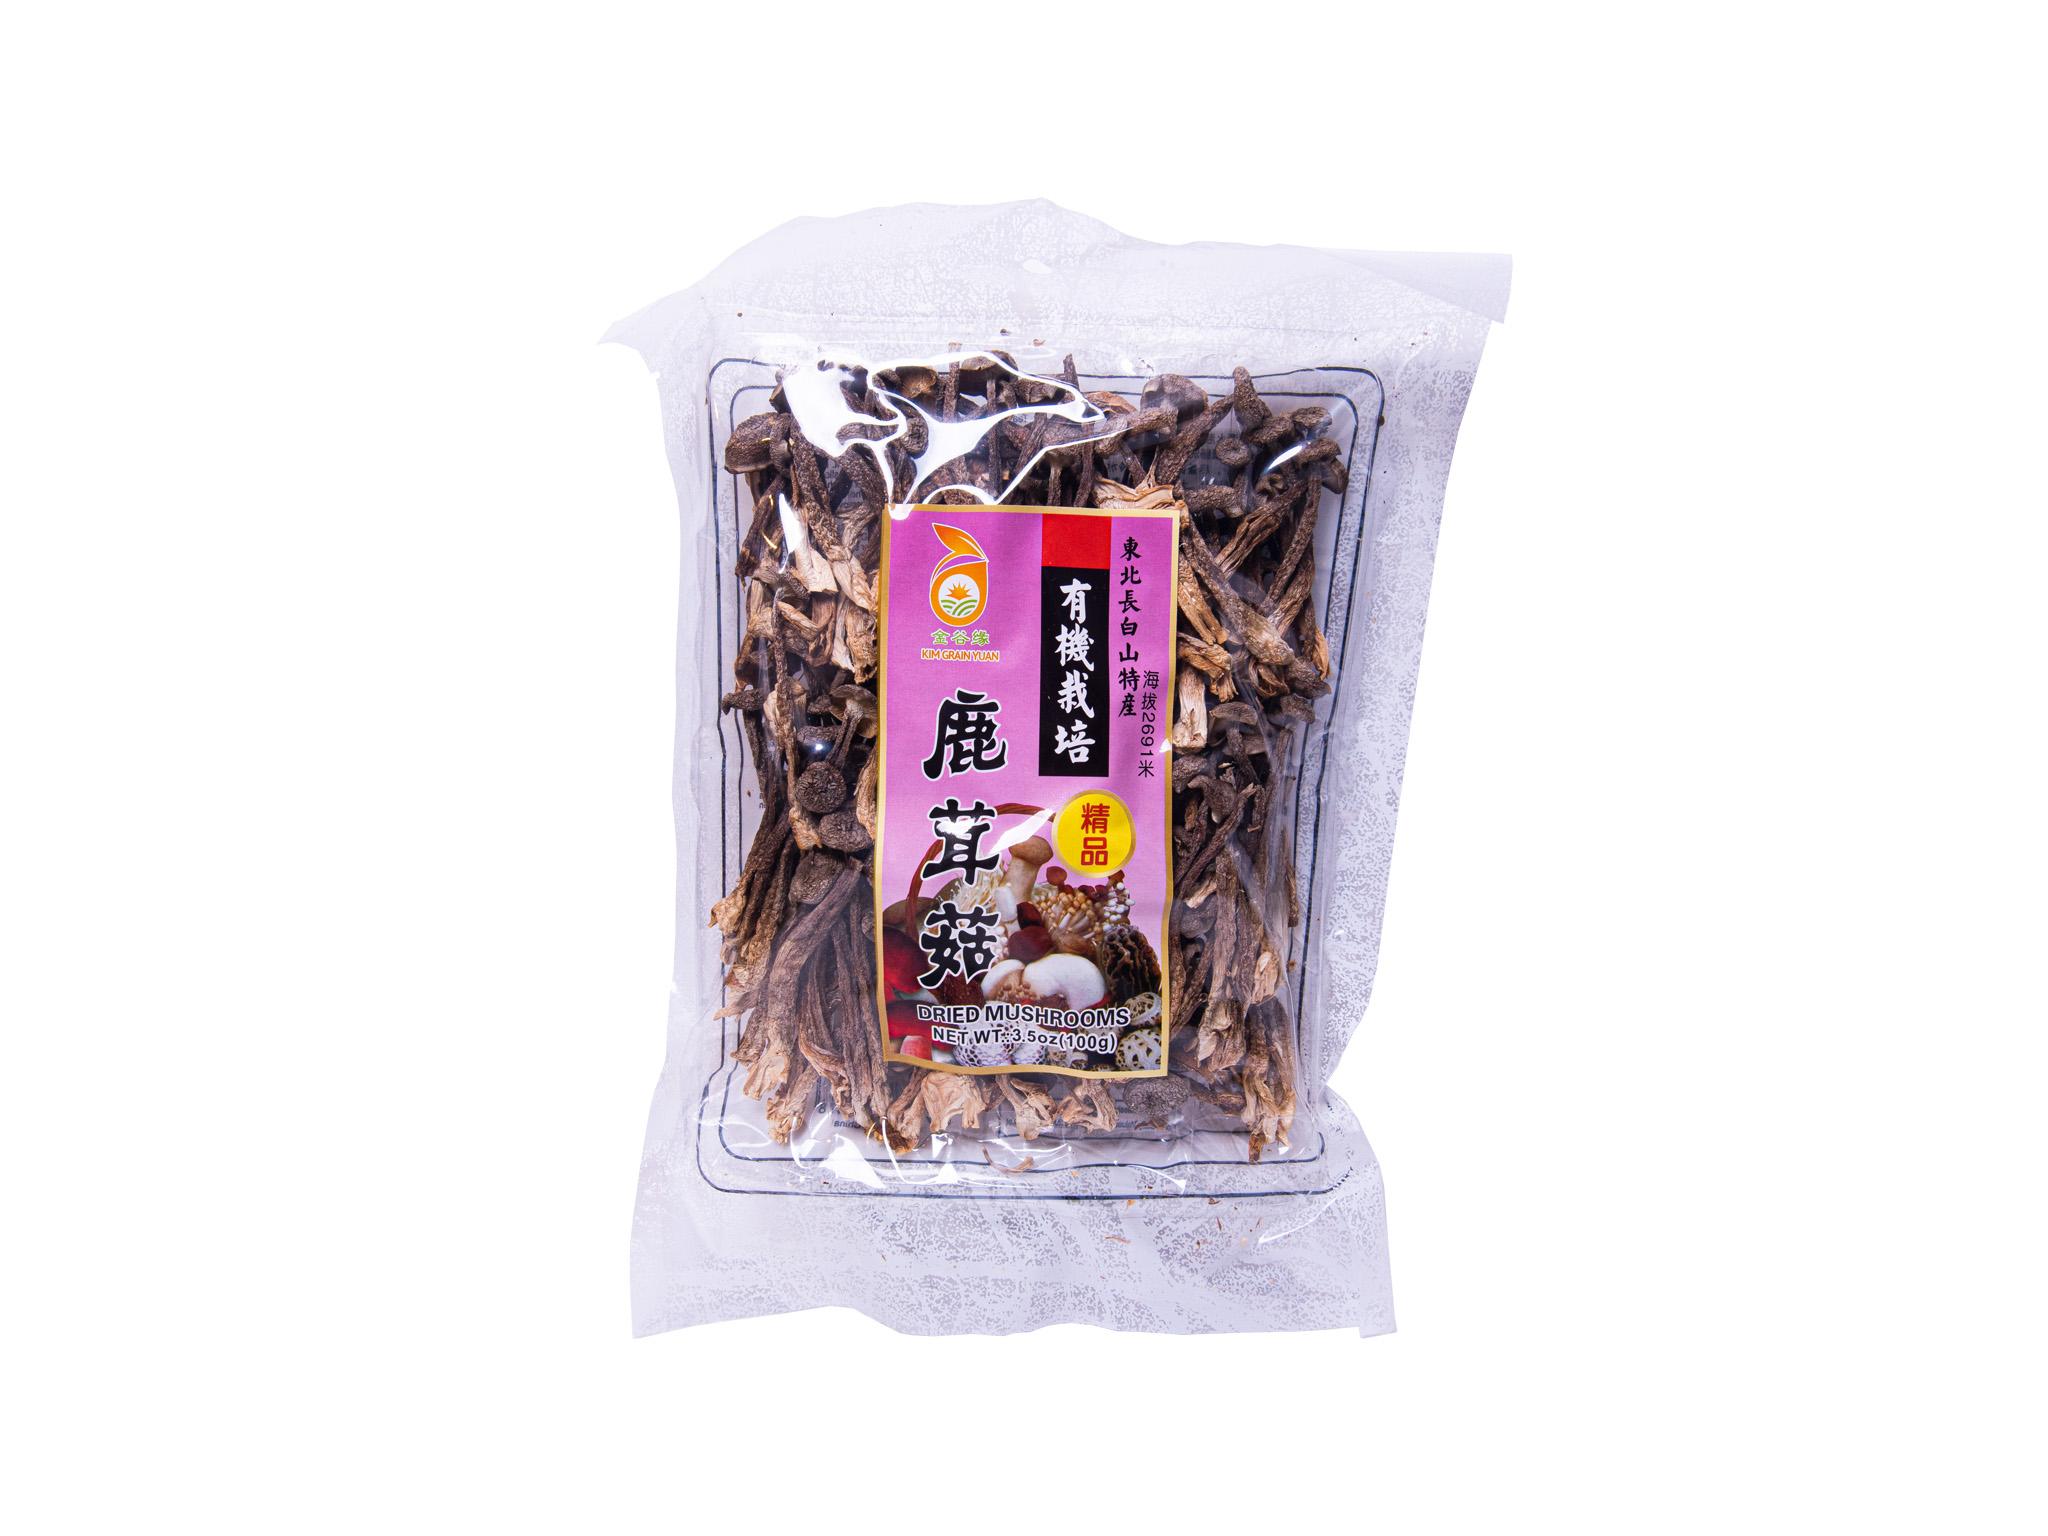 kim-grain-yuan-dried-muchroom